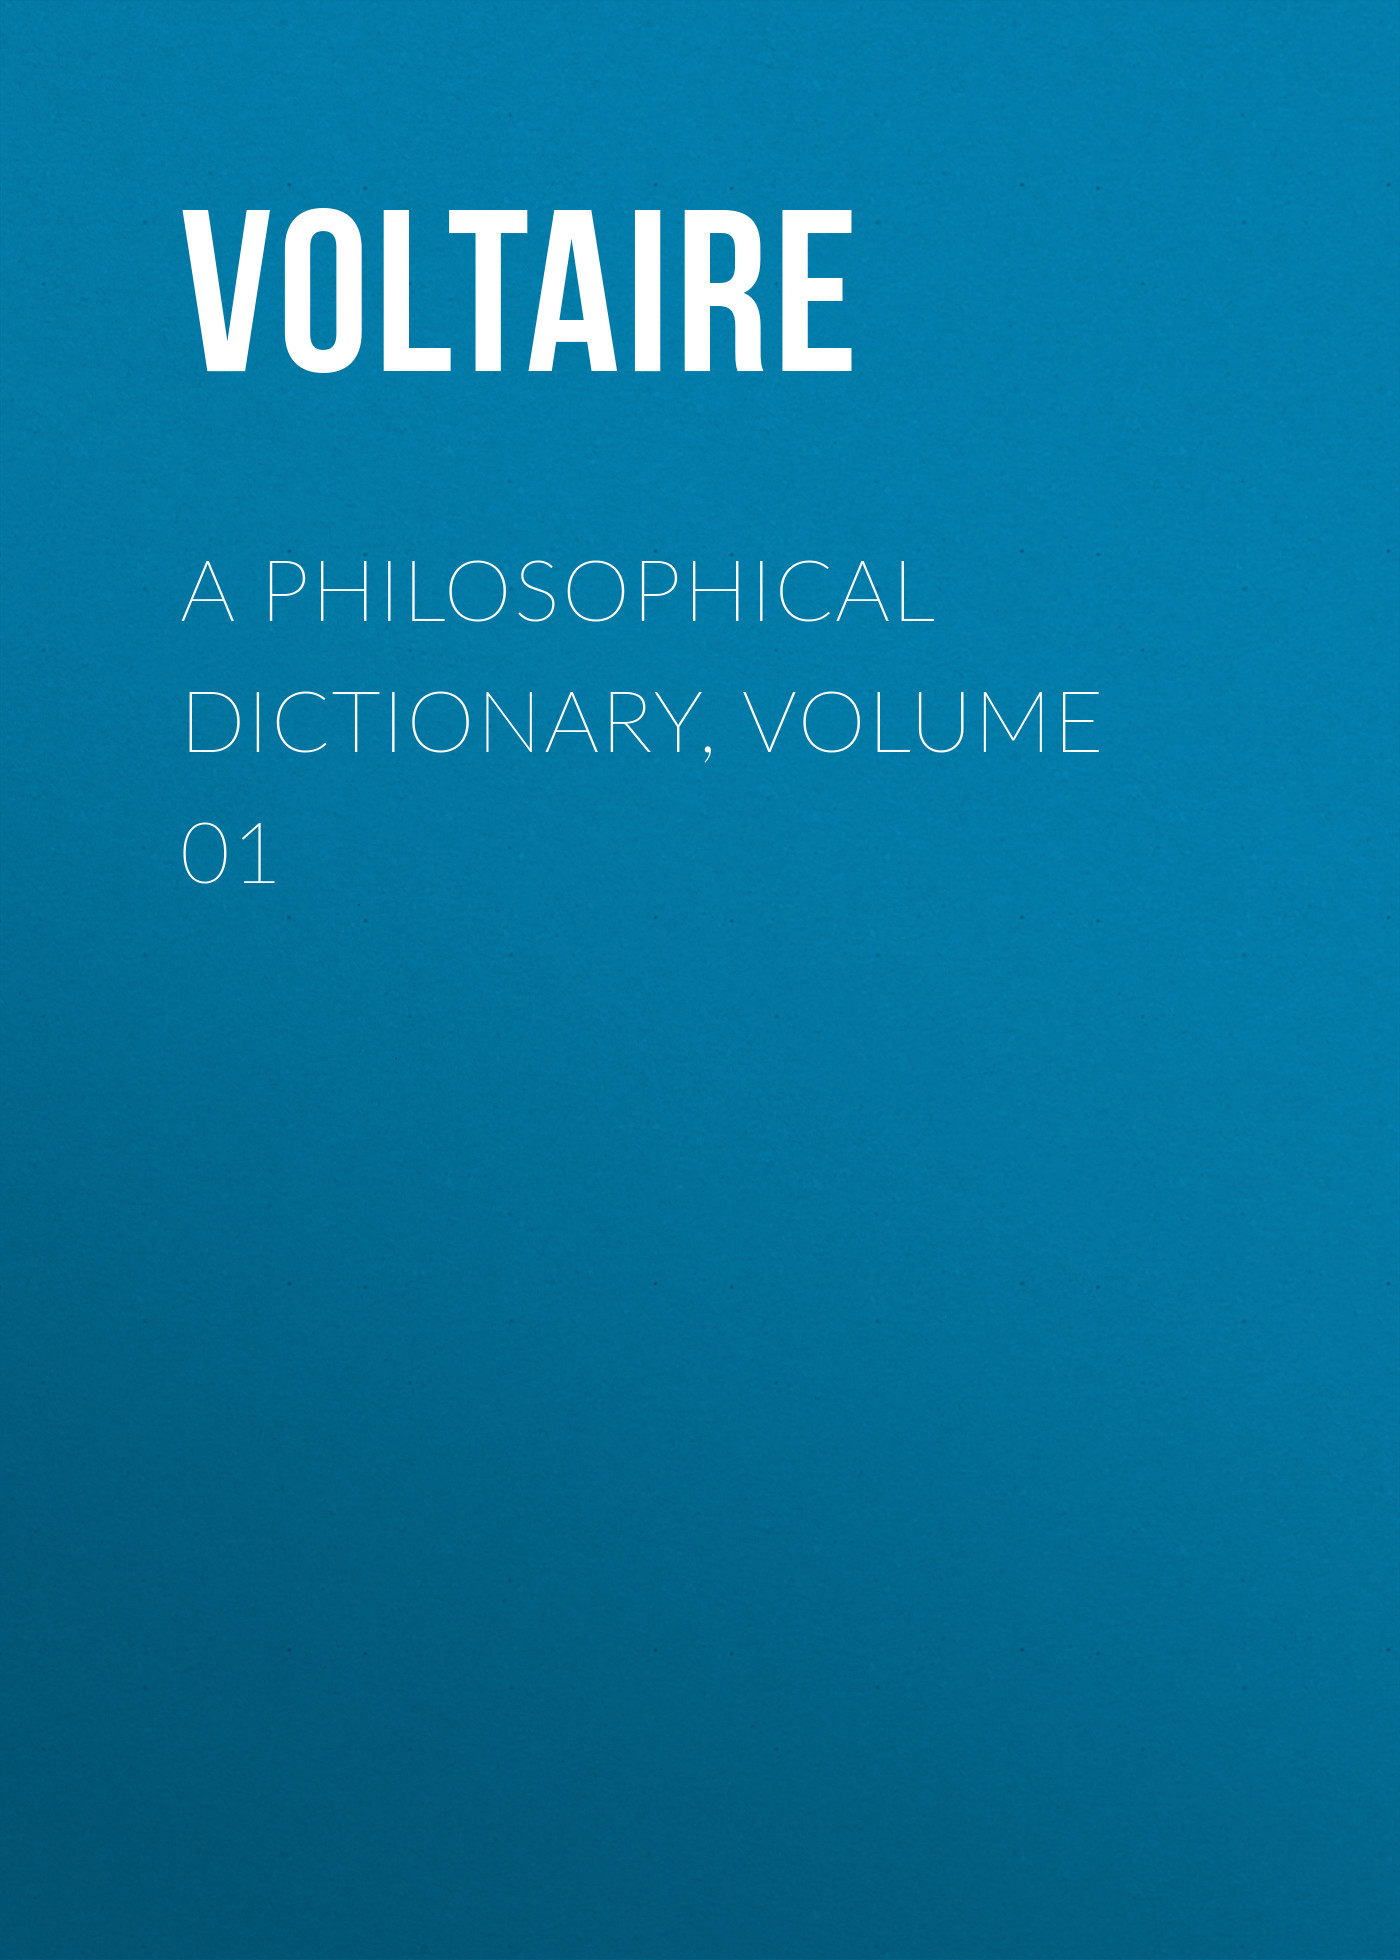 Книга A Philosophical Dictionary, Volume 01 из серии , созданная  Voltaire, может относится к жанру Философия, Литература 18 века, Зарубежная классика. Стоимость электронной книги A Philosophical Dictionary, Volume 01 с идентификатором 25560812 составляет 0 руб.